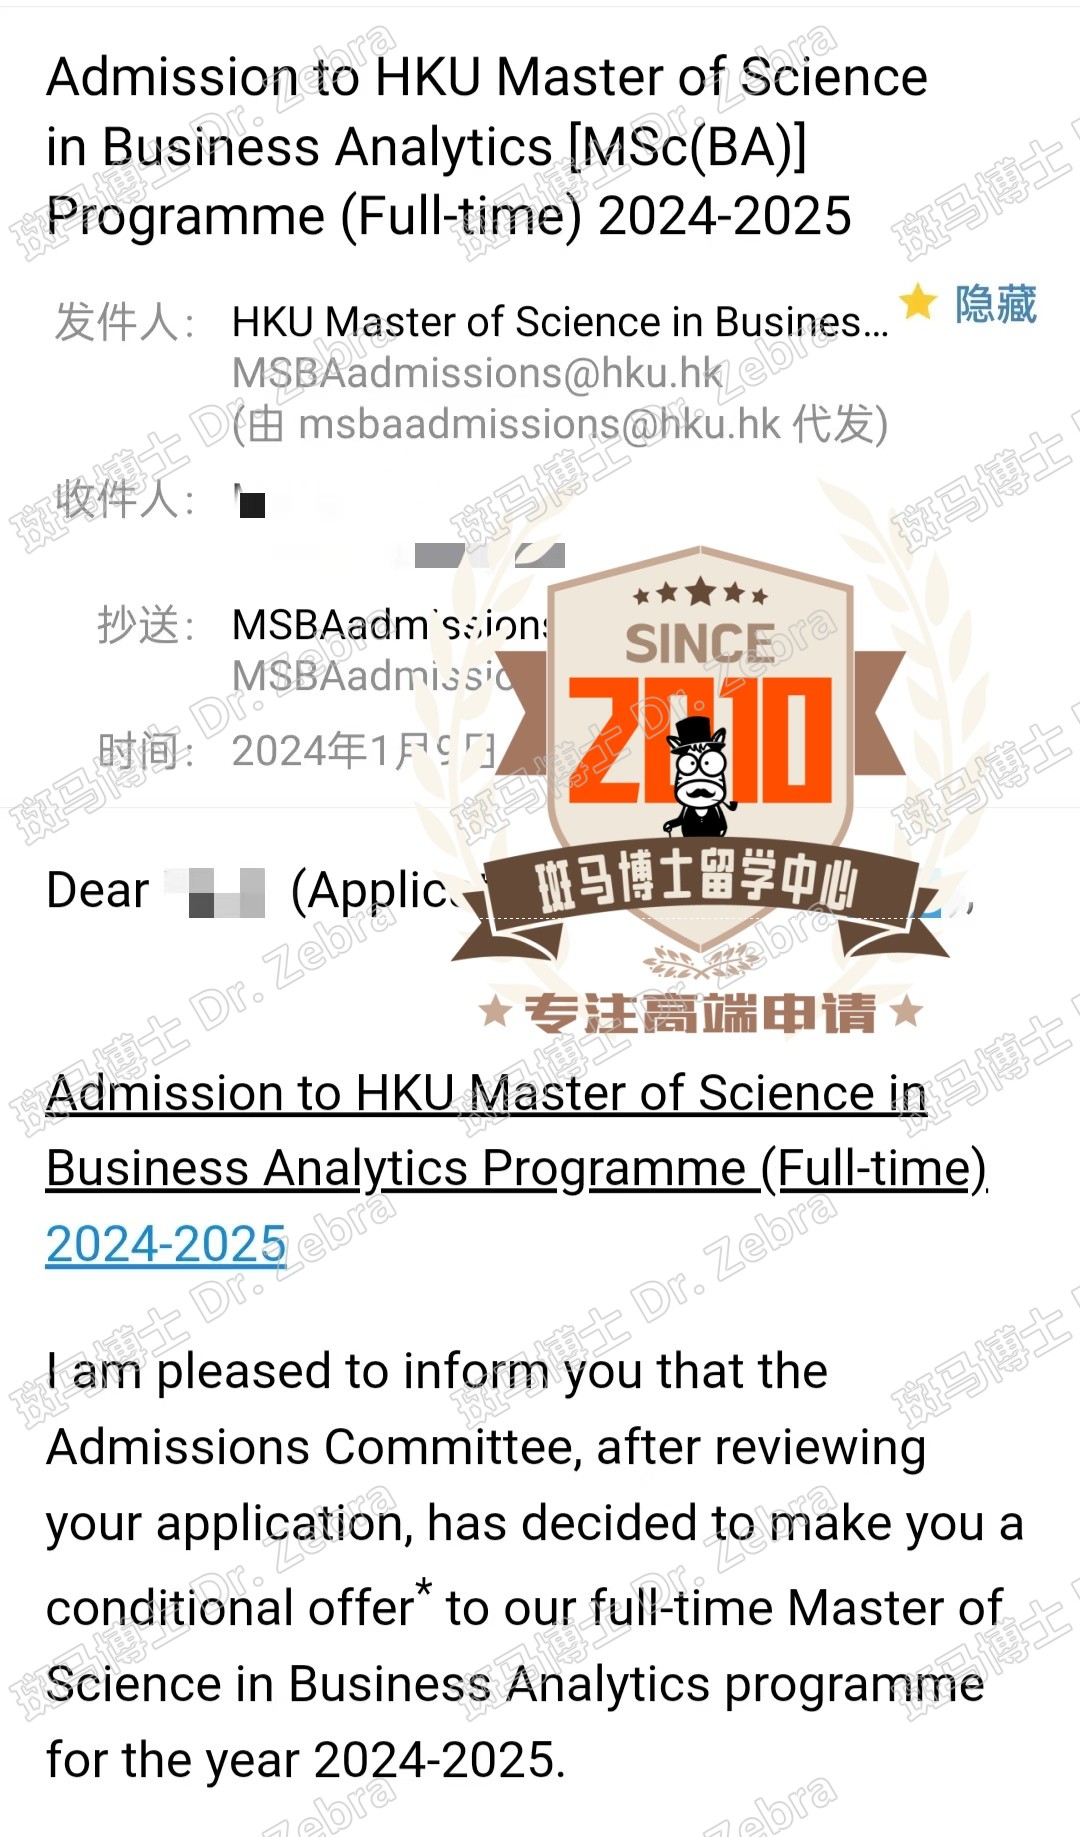 斑马博士，斑马博士留学中心，香港大学， The University of Hong Kong（HKU），Master of Science in Business Analytics（BA），商业分析硕士